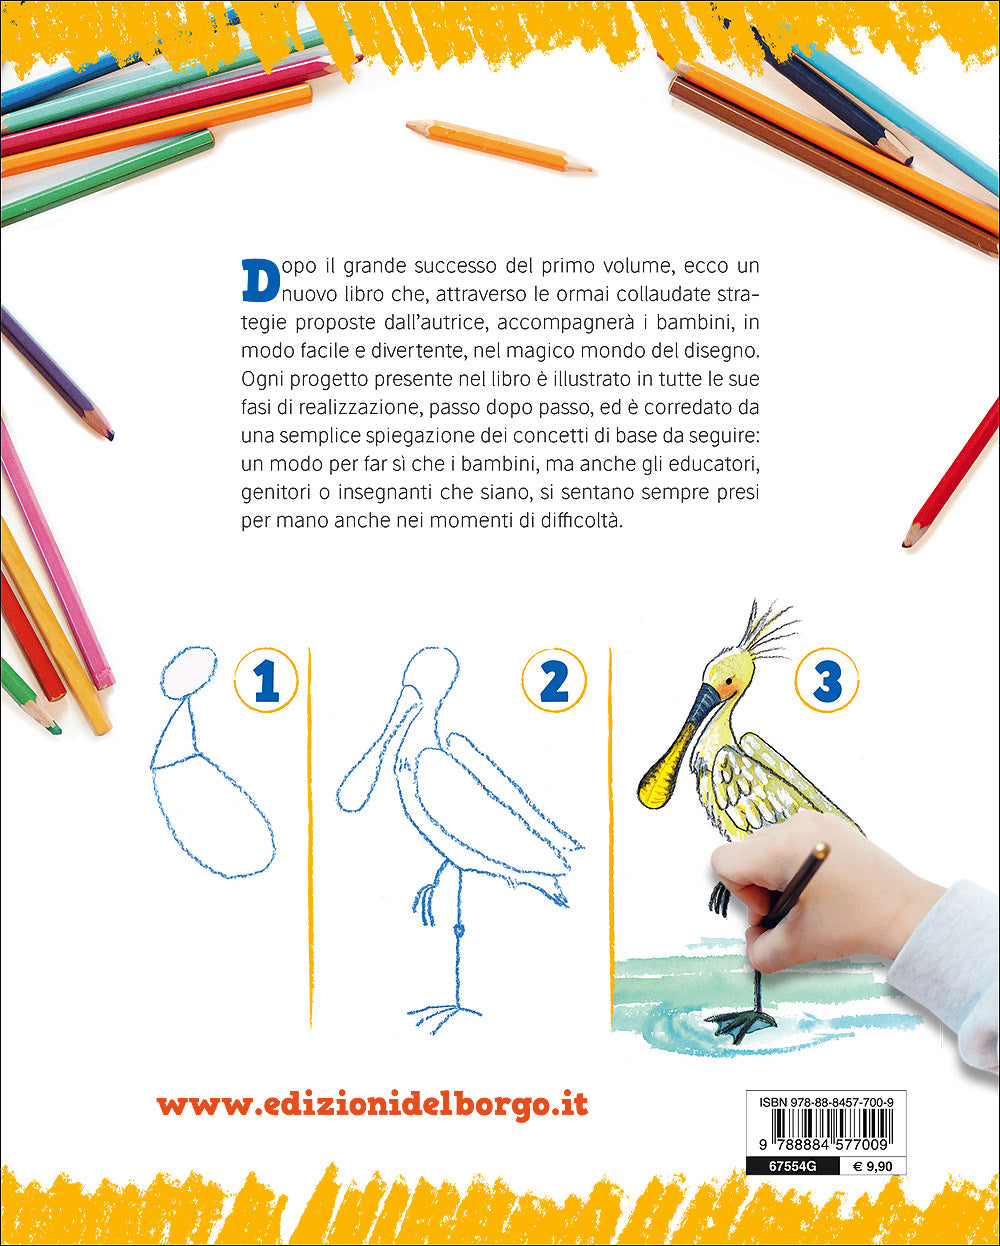 Imparare a disegnare. Corso per bambini - Vol. 2, Rosa Maria Curto